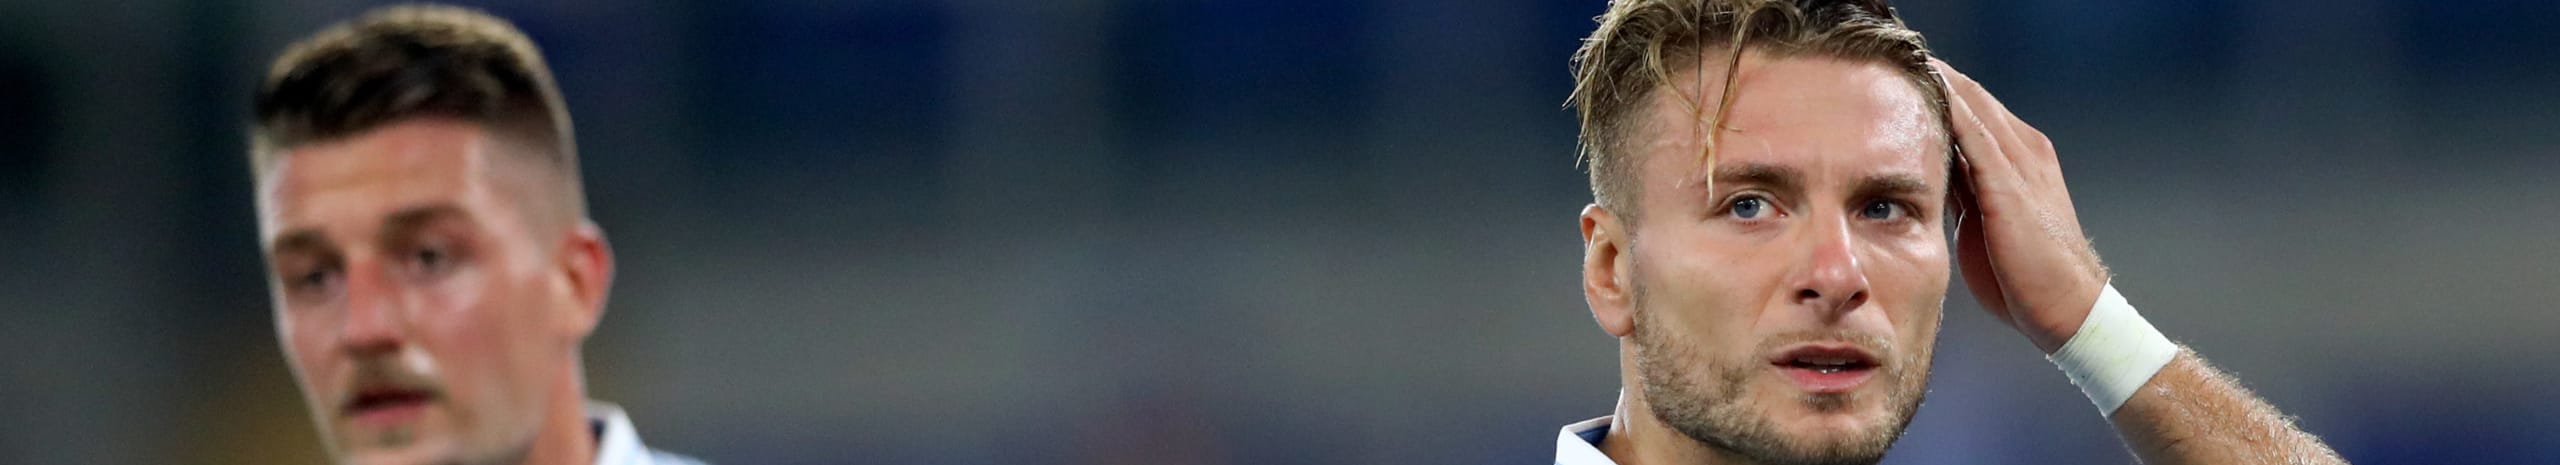 Pronostico Lazio-Inter: se Radu non ce la fa, Parolo centrale – le ultimissime